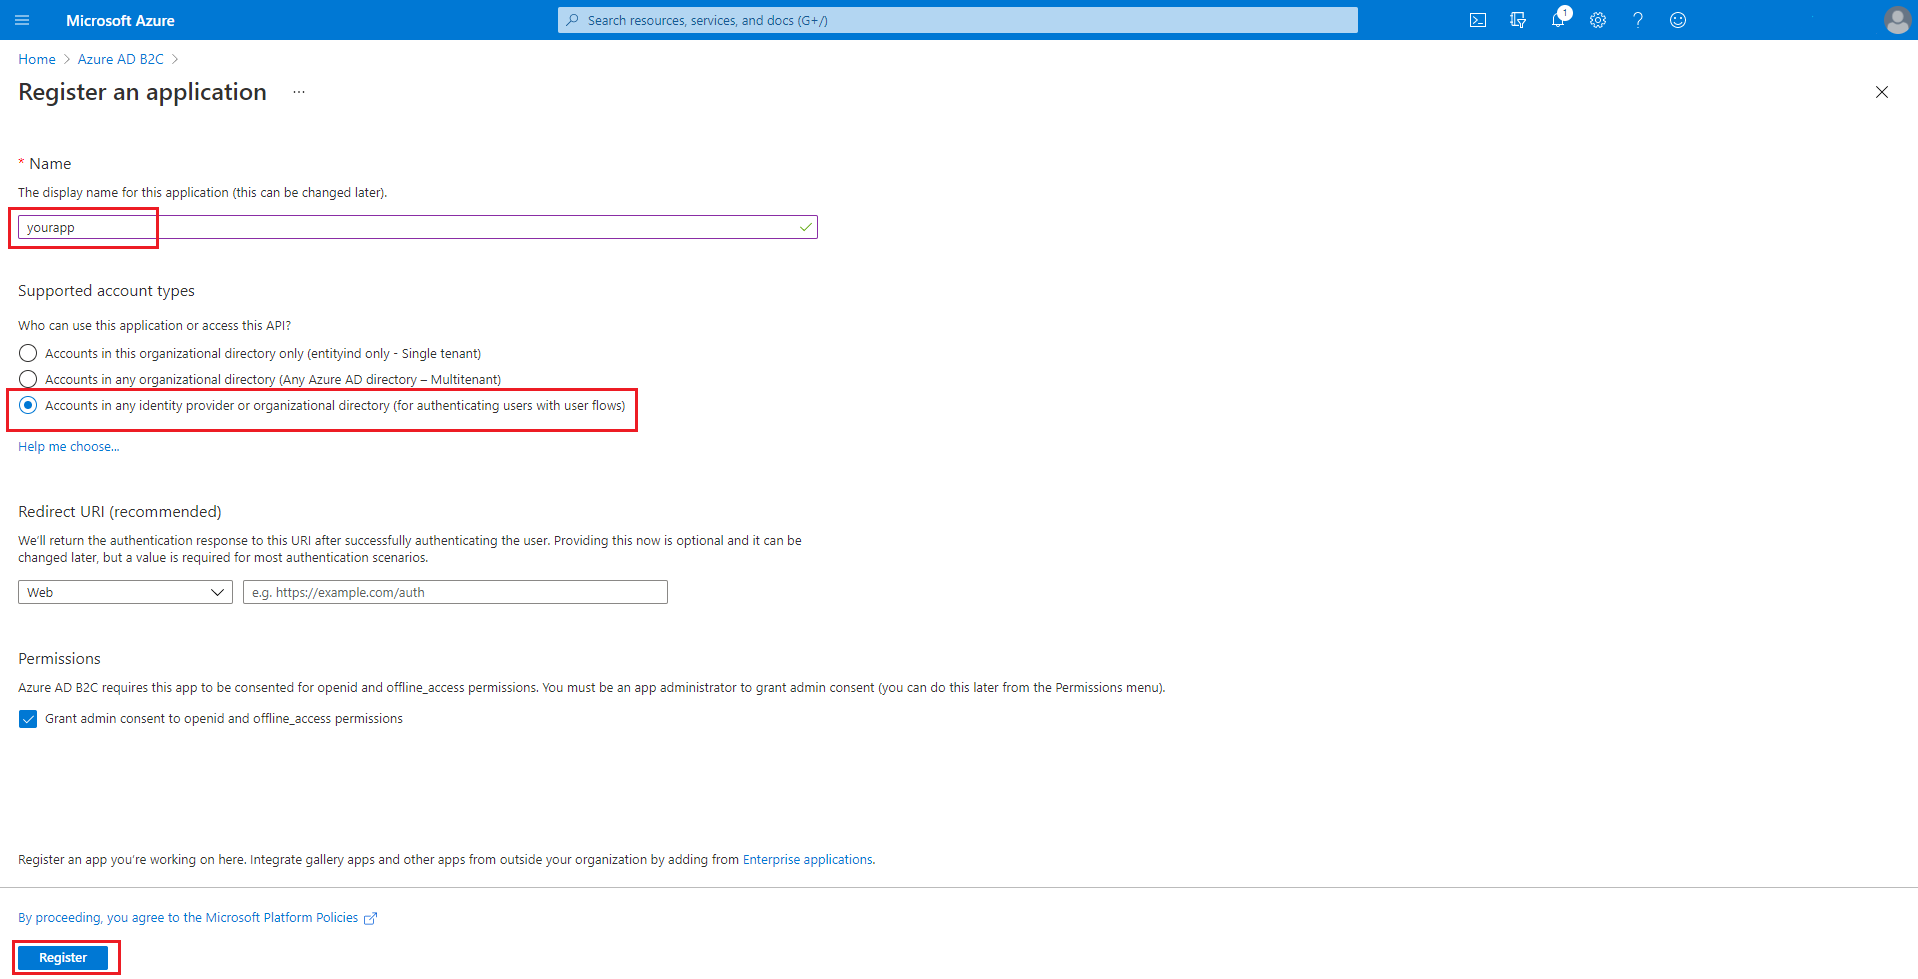 Formulario para registrar una aplicación de Azure AD B2C.